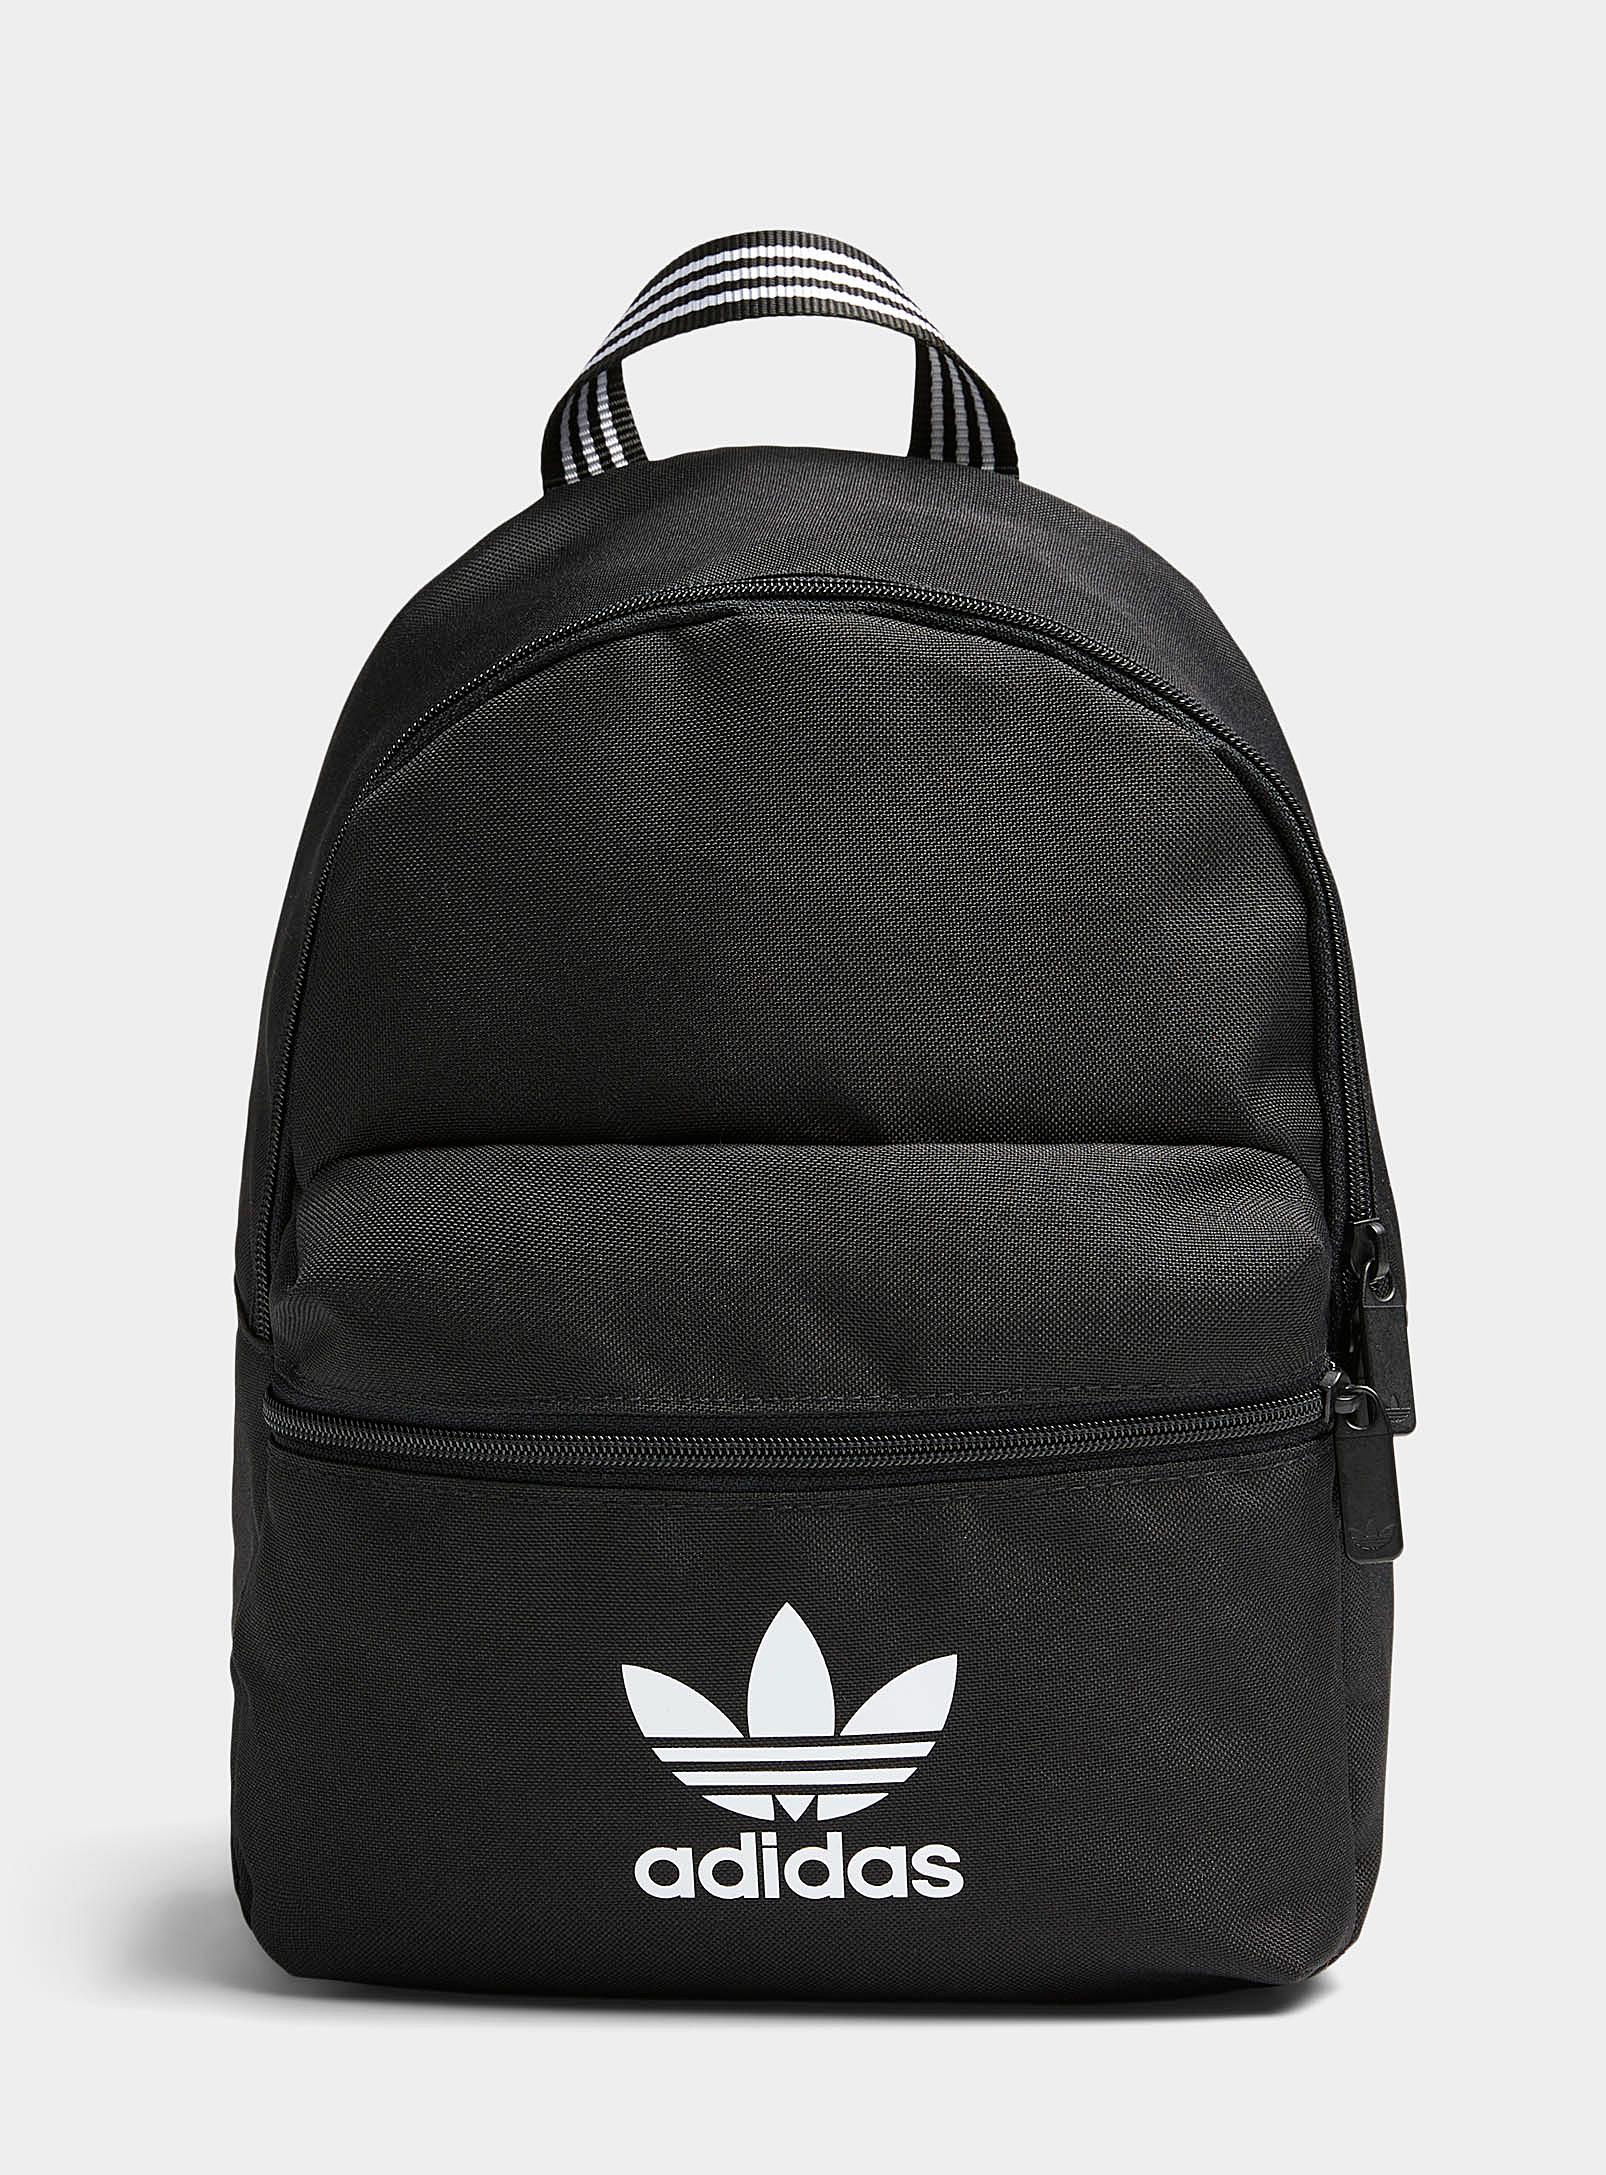 adidas Originals Adicolor Logo Mini Backpack in Black | Lyst